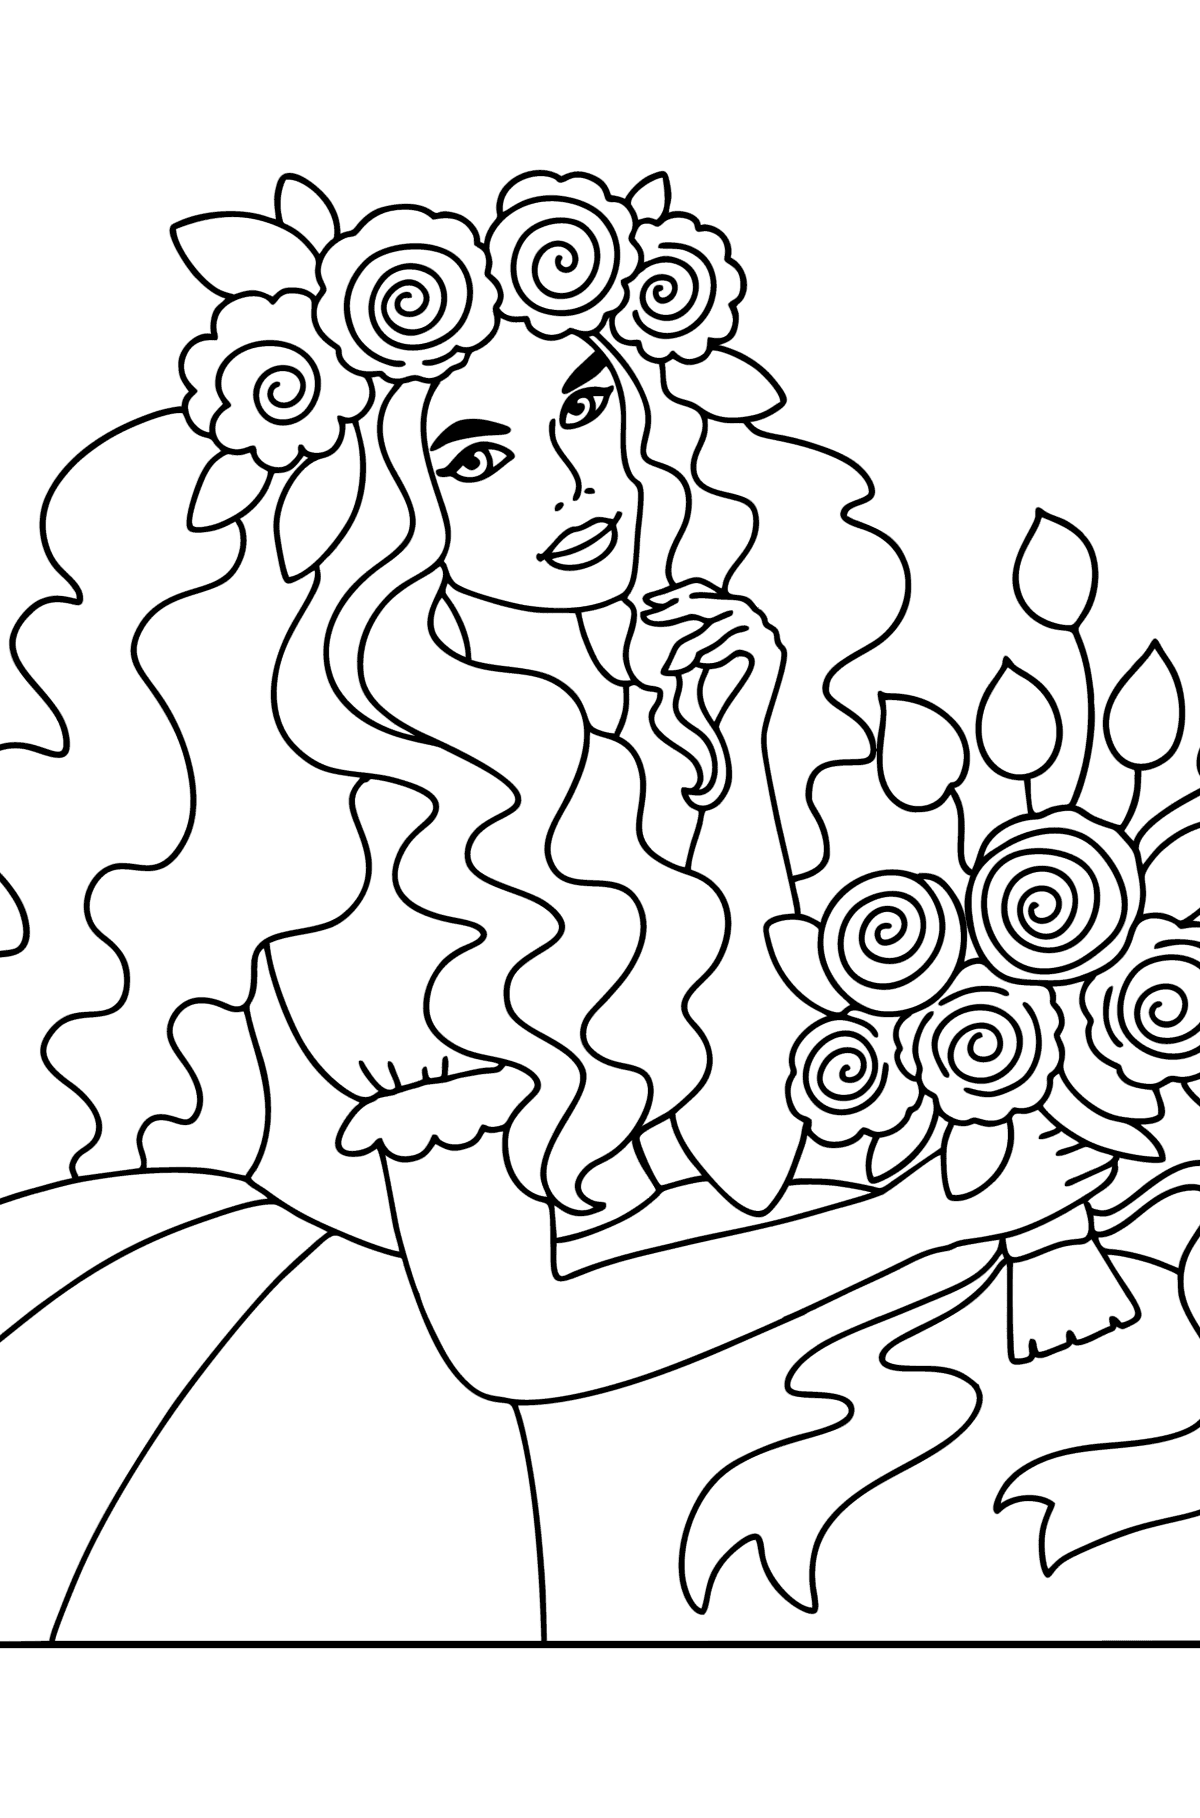 Tegning til farvning Blomsterprinsesse - Tegninger til farvelægning for børn